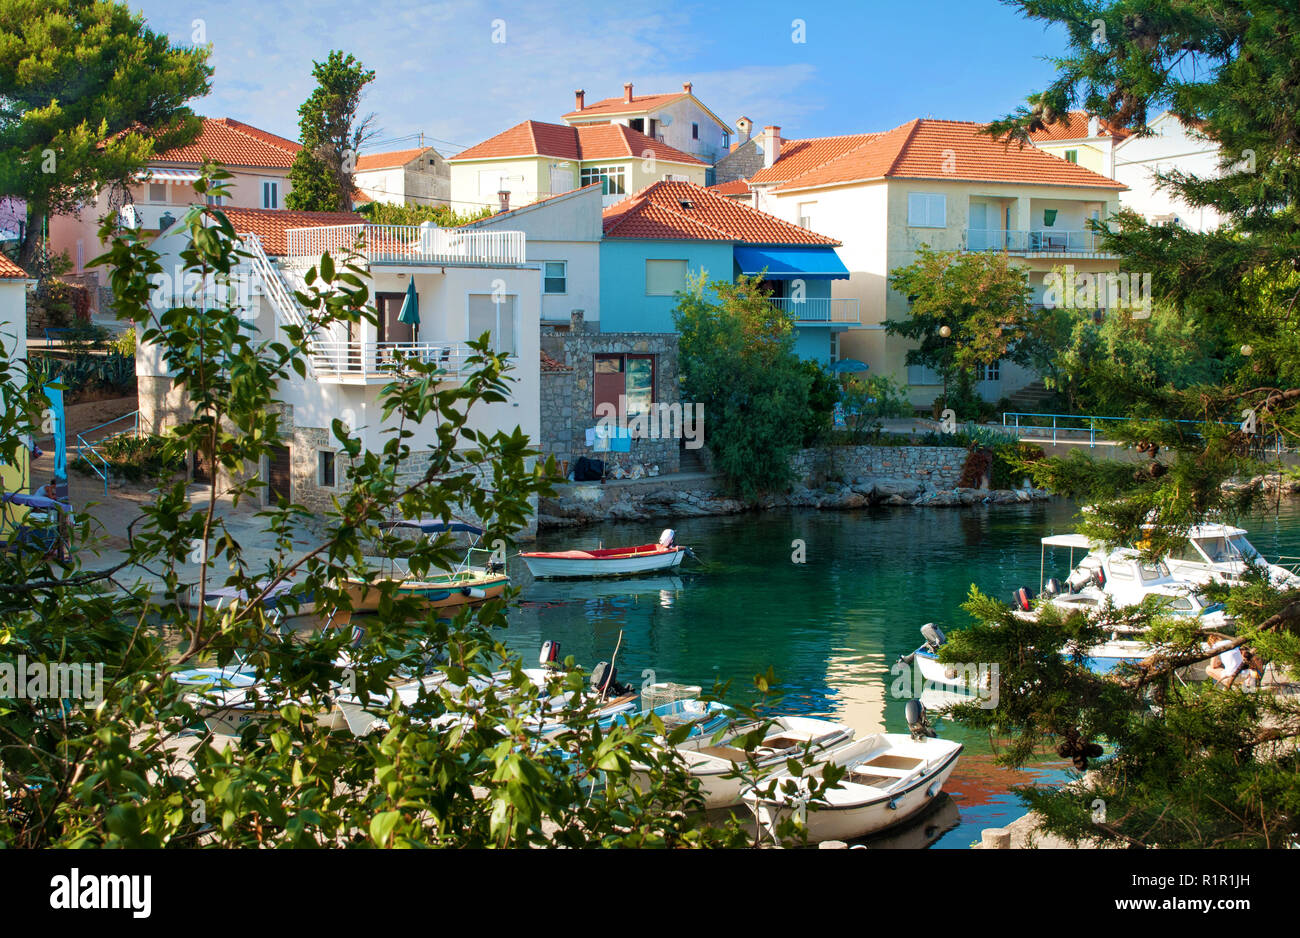 Accogliente e pittoresca cittadina di Bozava, Dugi otok croazia. Piccole case colorate in prossimità di acqua verde smeraldo dove barche e yacht sono flottanti. Tutto fr Foto Stock